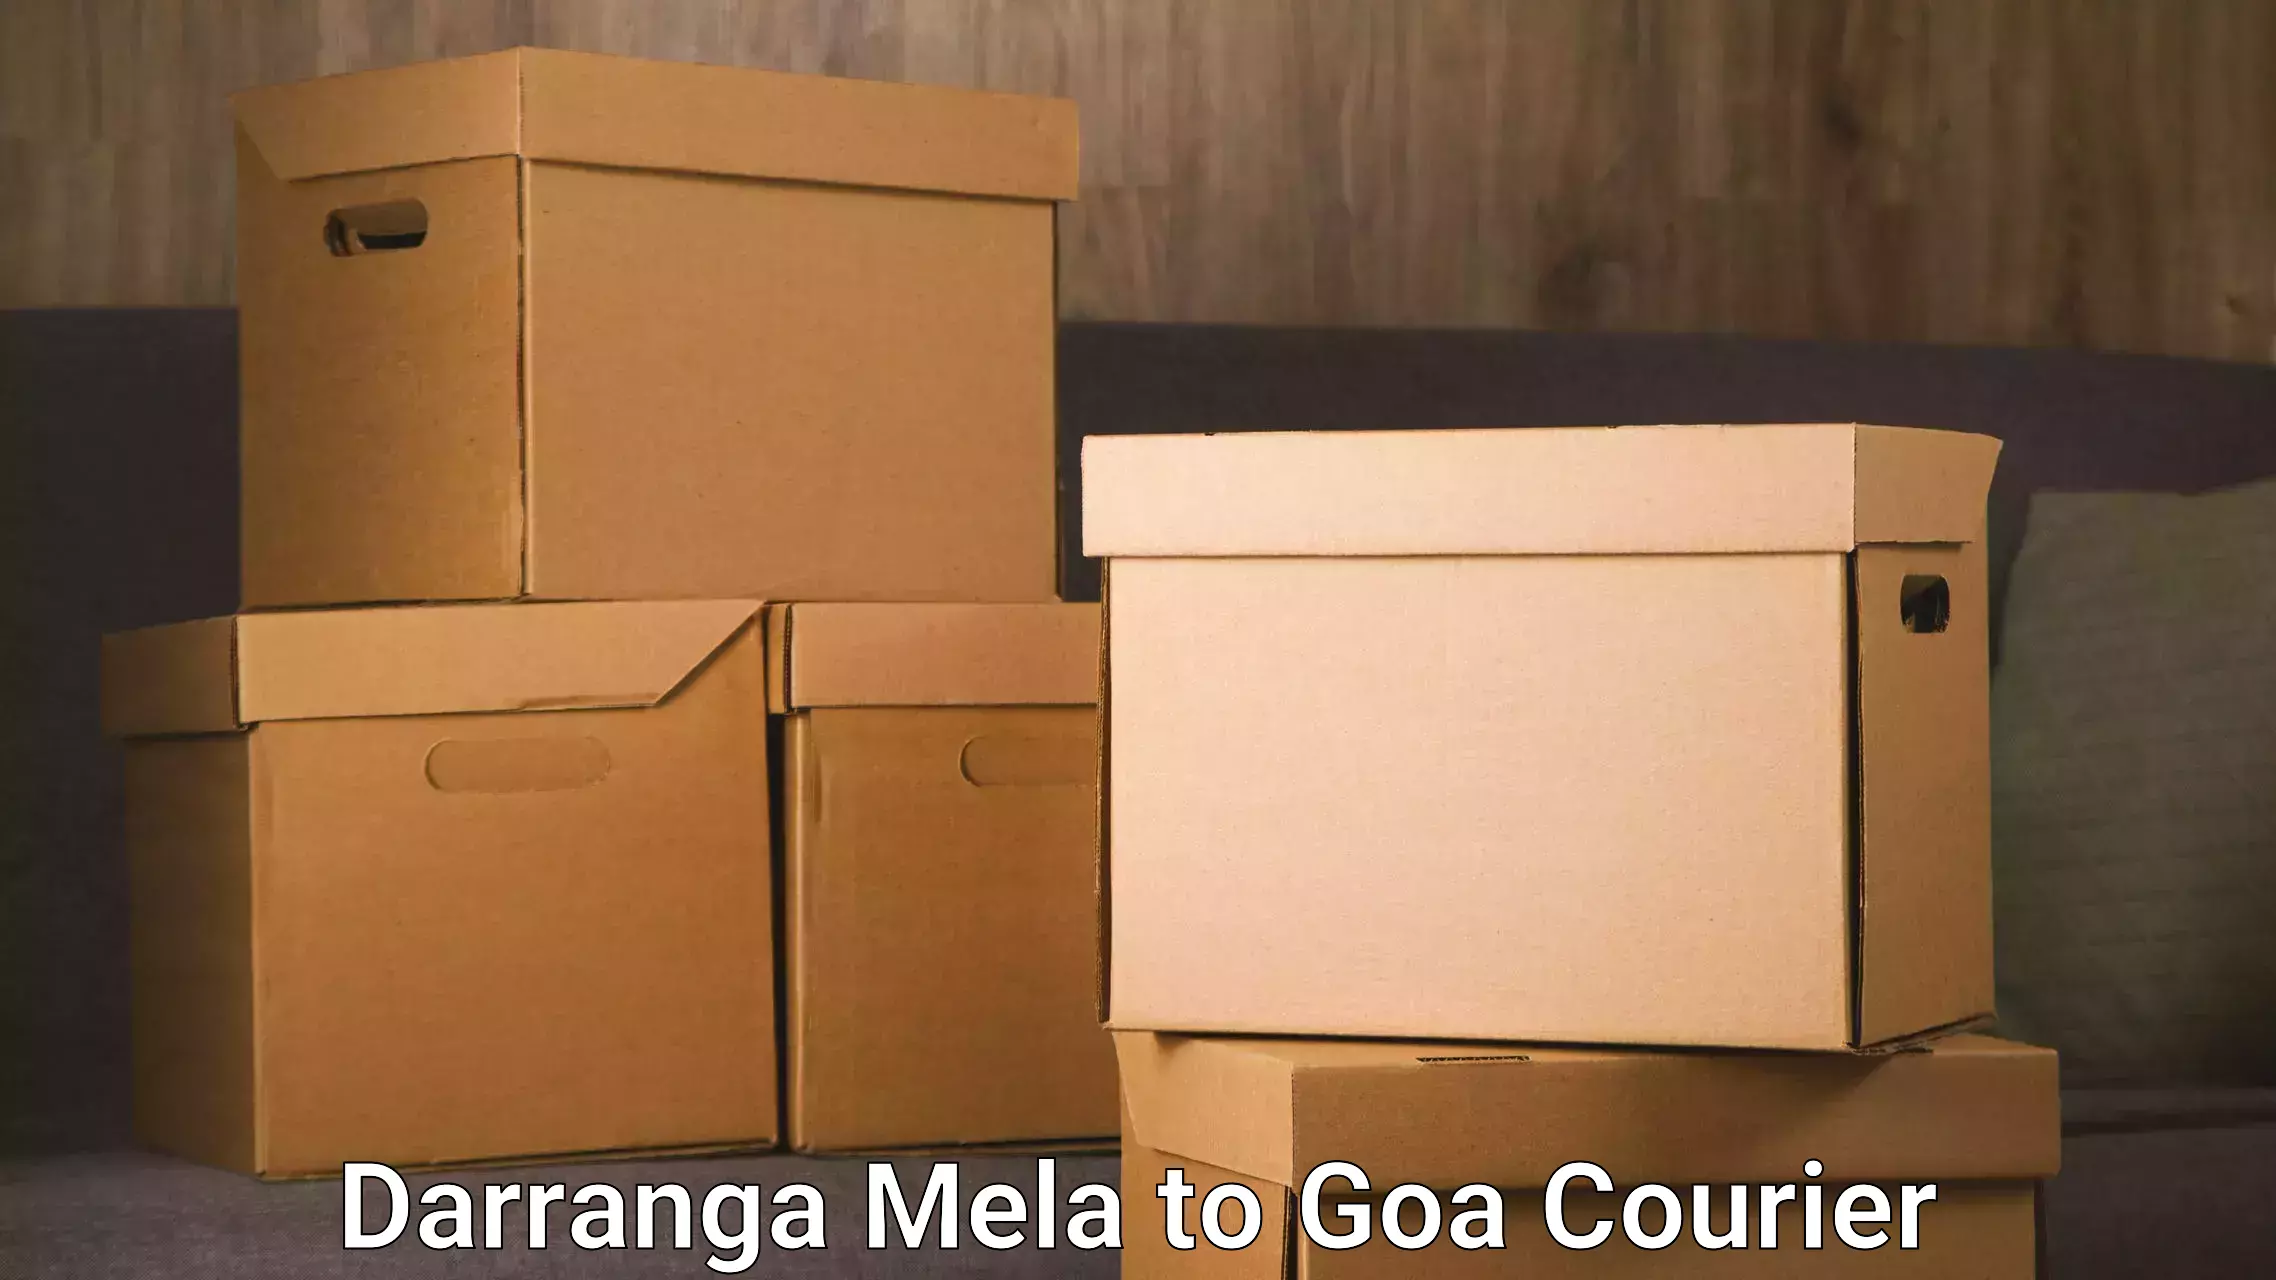 Optimized delivery routes in Darranga Mela to NIT Goa